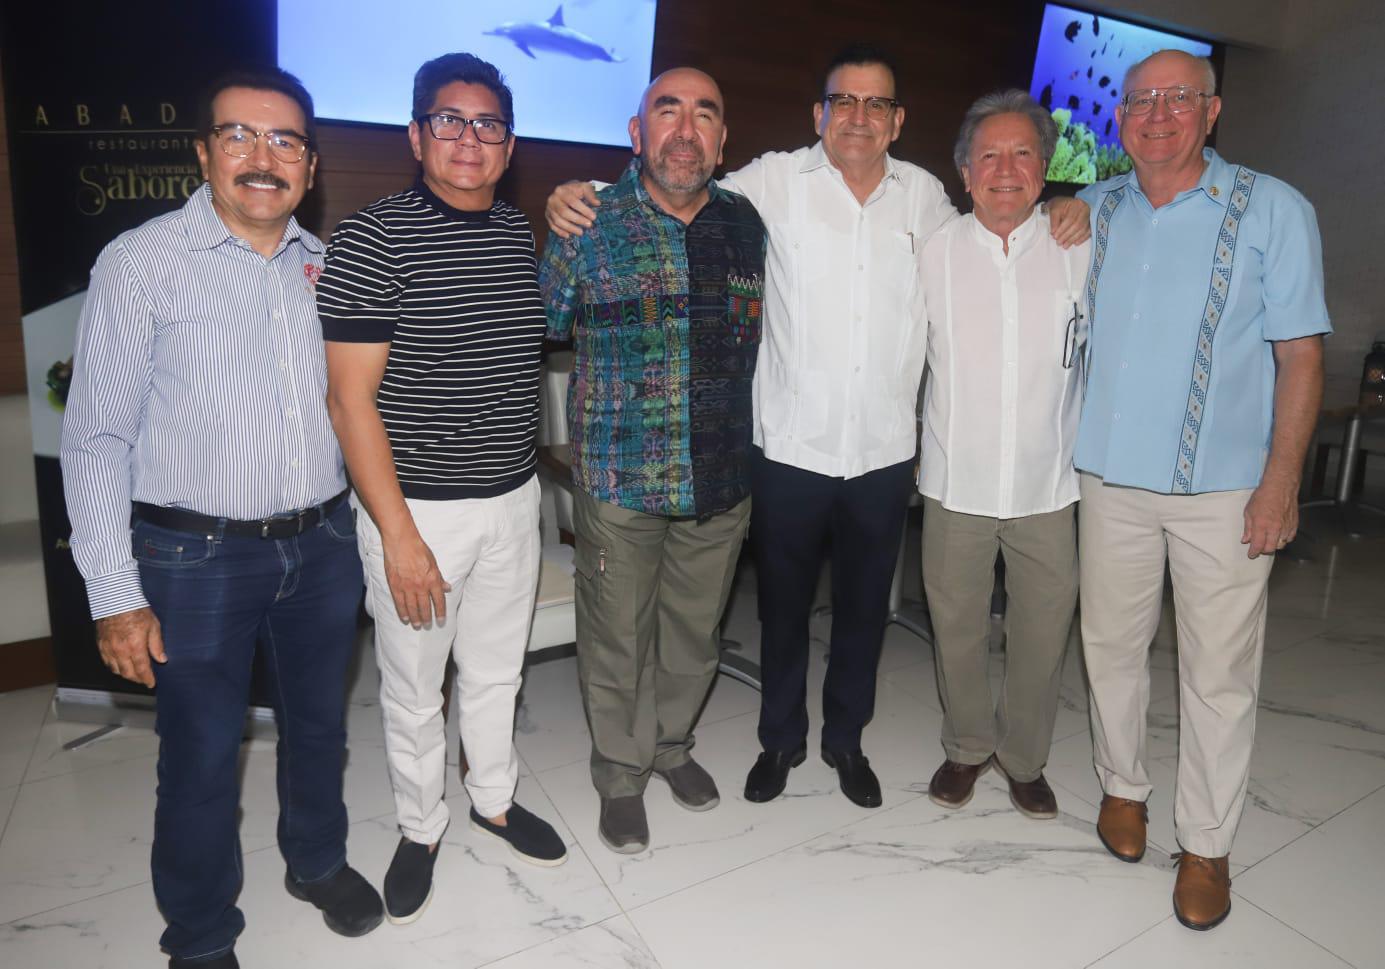 $!Florencio Osuna, Florencio Álvarez, Jorge Muñoz, Martín Sánchez Reynoso, Juan Llausas y Artur Wohlers.